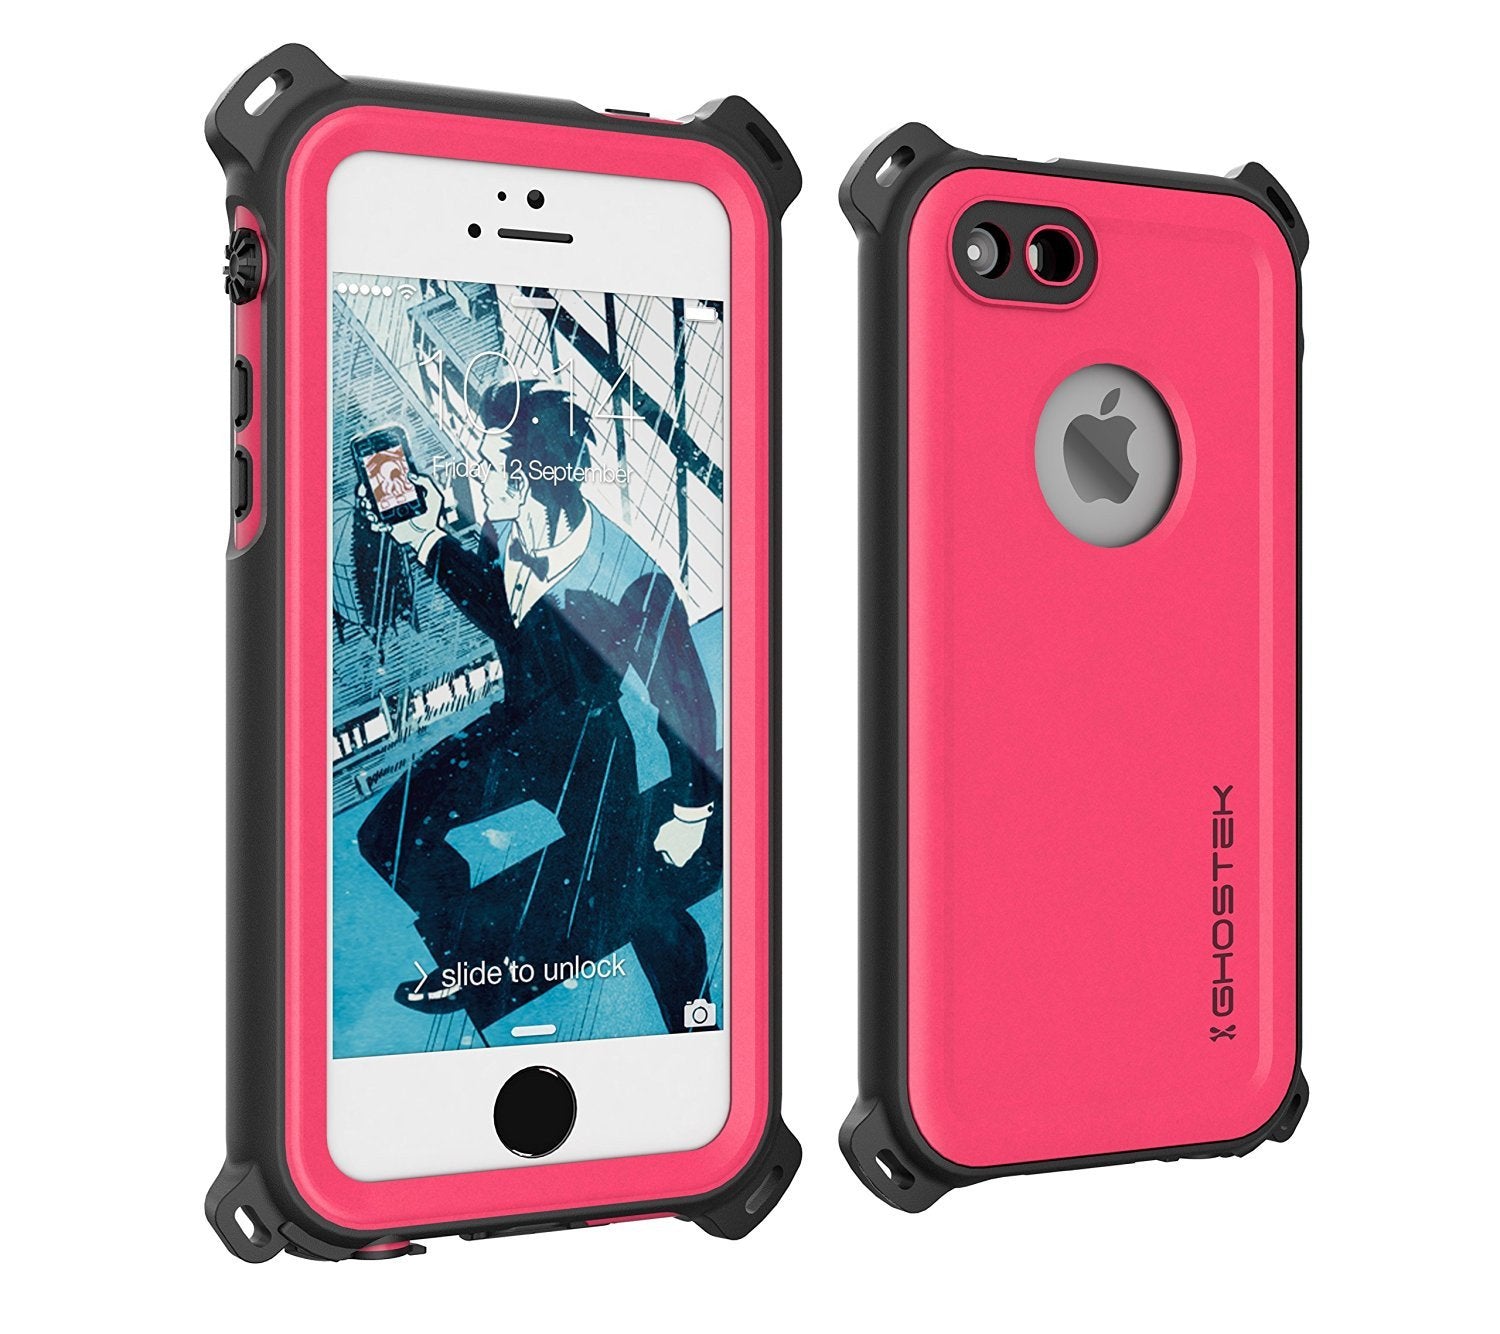 iPhone SE/5S/5 Waterproof Case, Ghostek® Nautical Pink Series| Underwater | Aluminum Frame